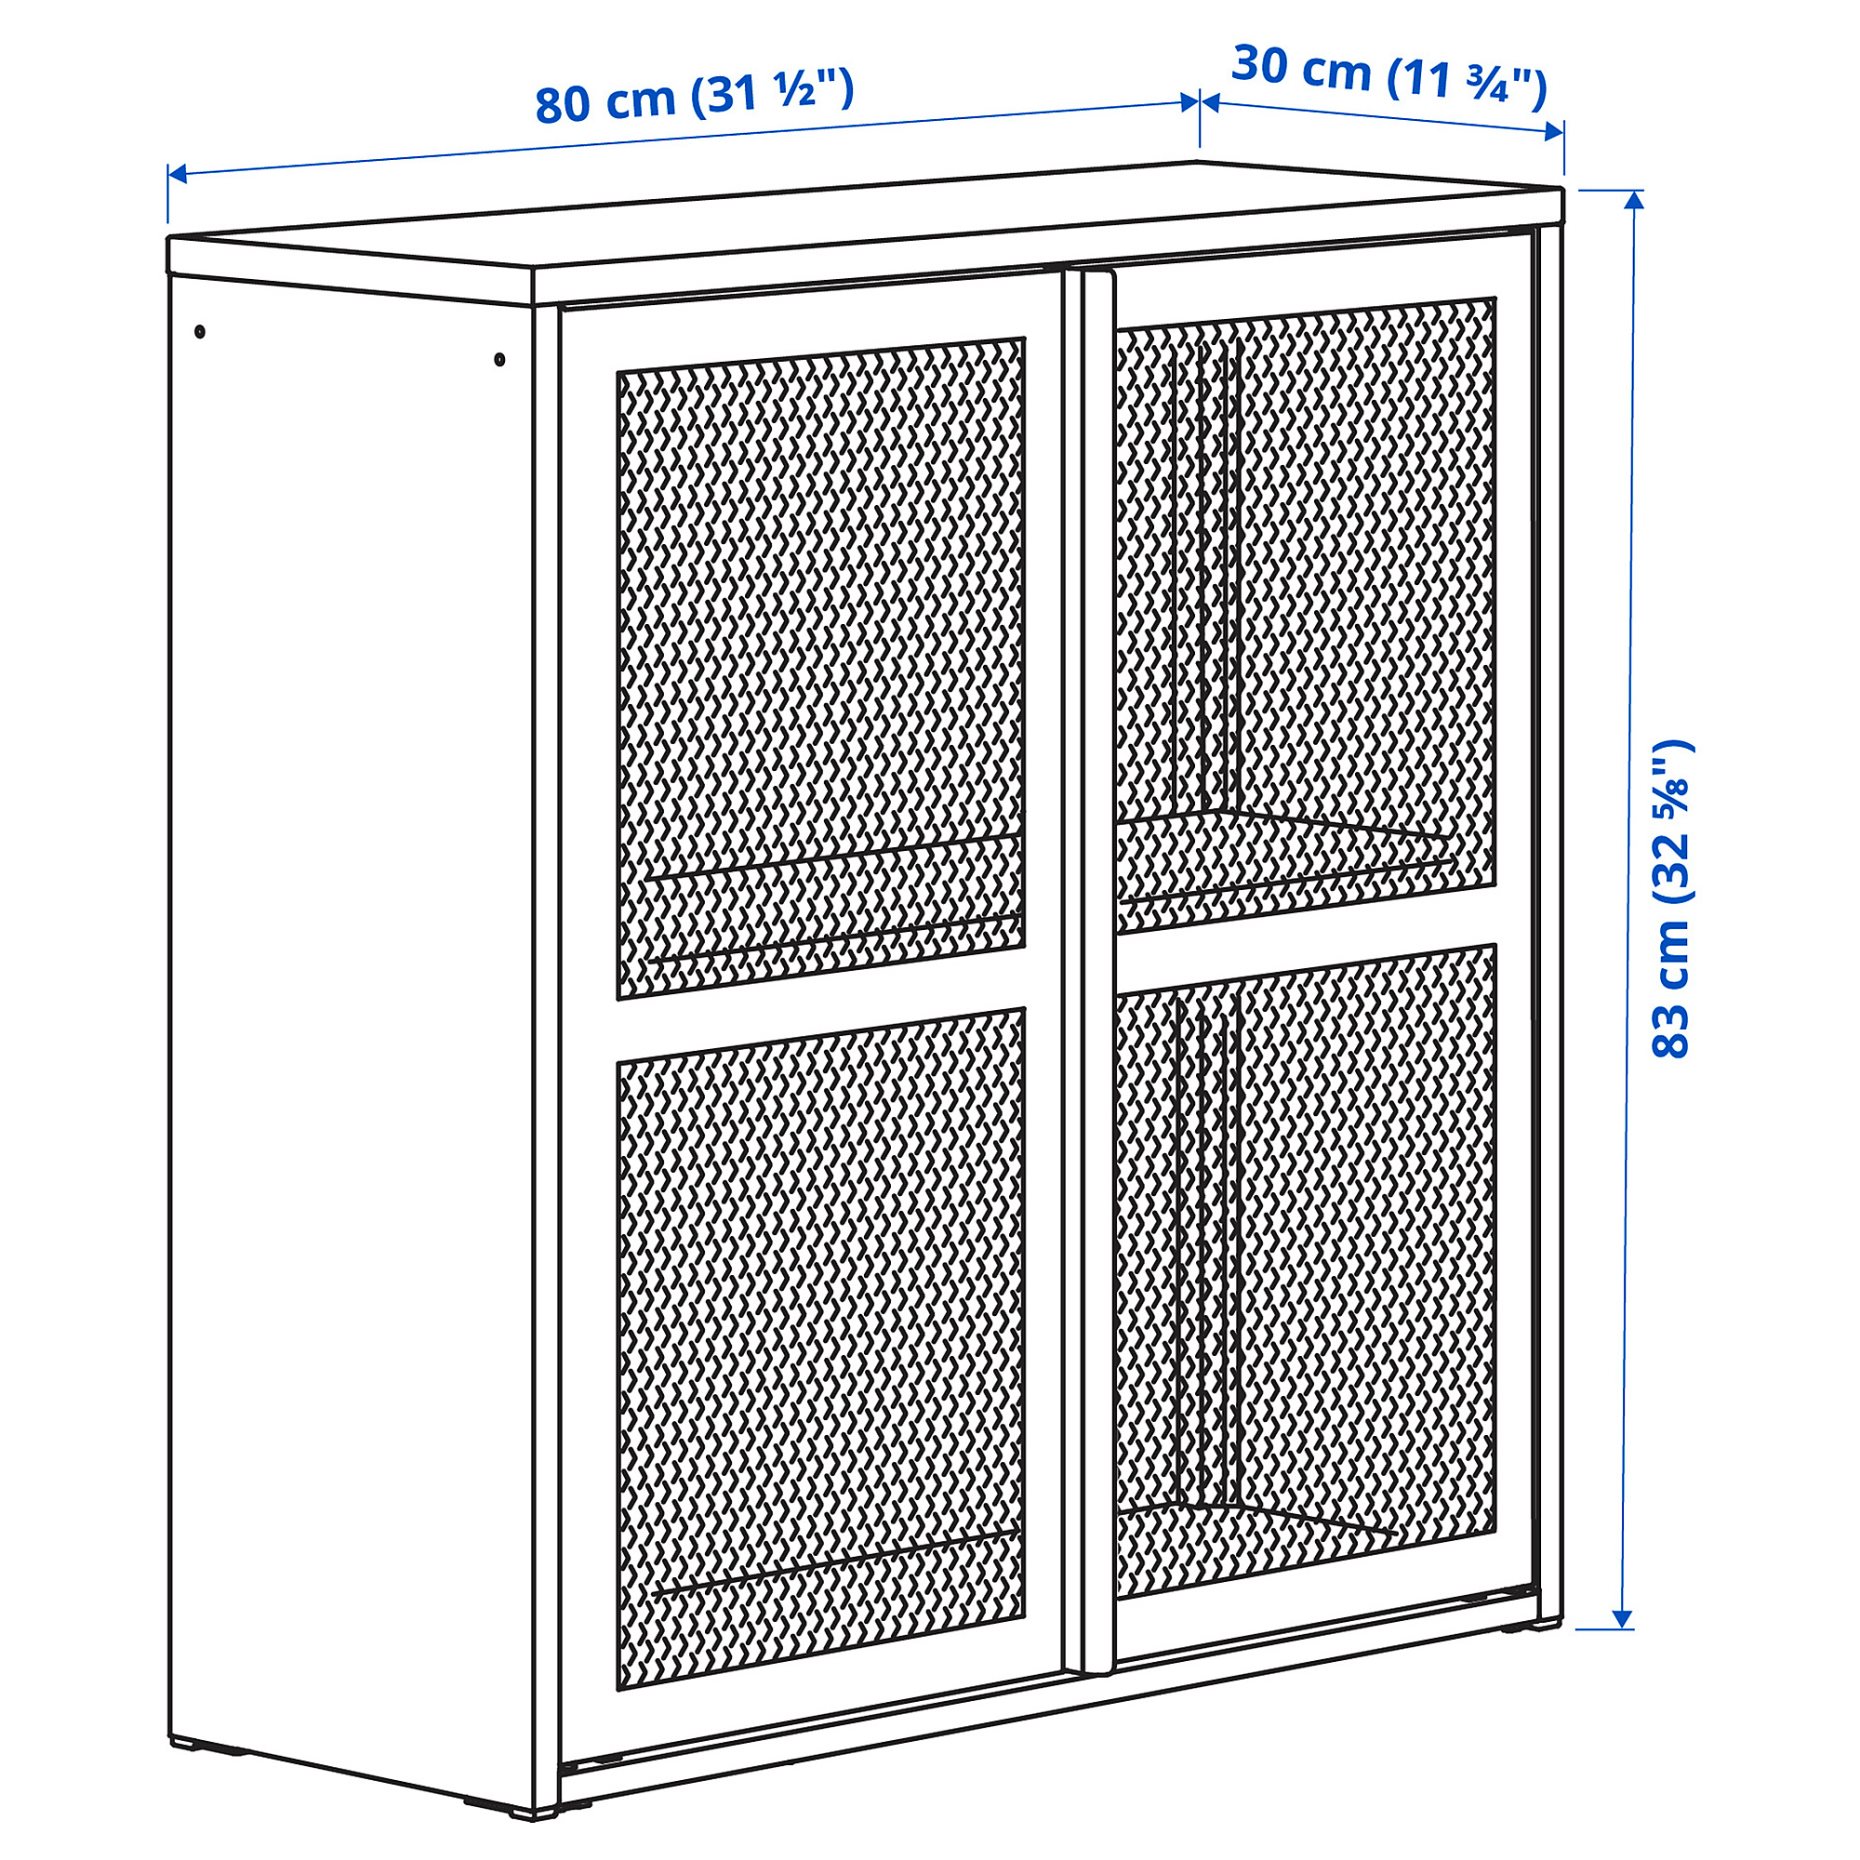 IVAR, cabinet with doors/mesh, 80x83 cm, 505.312.52